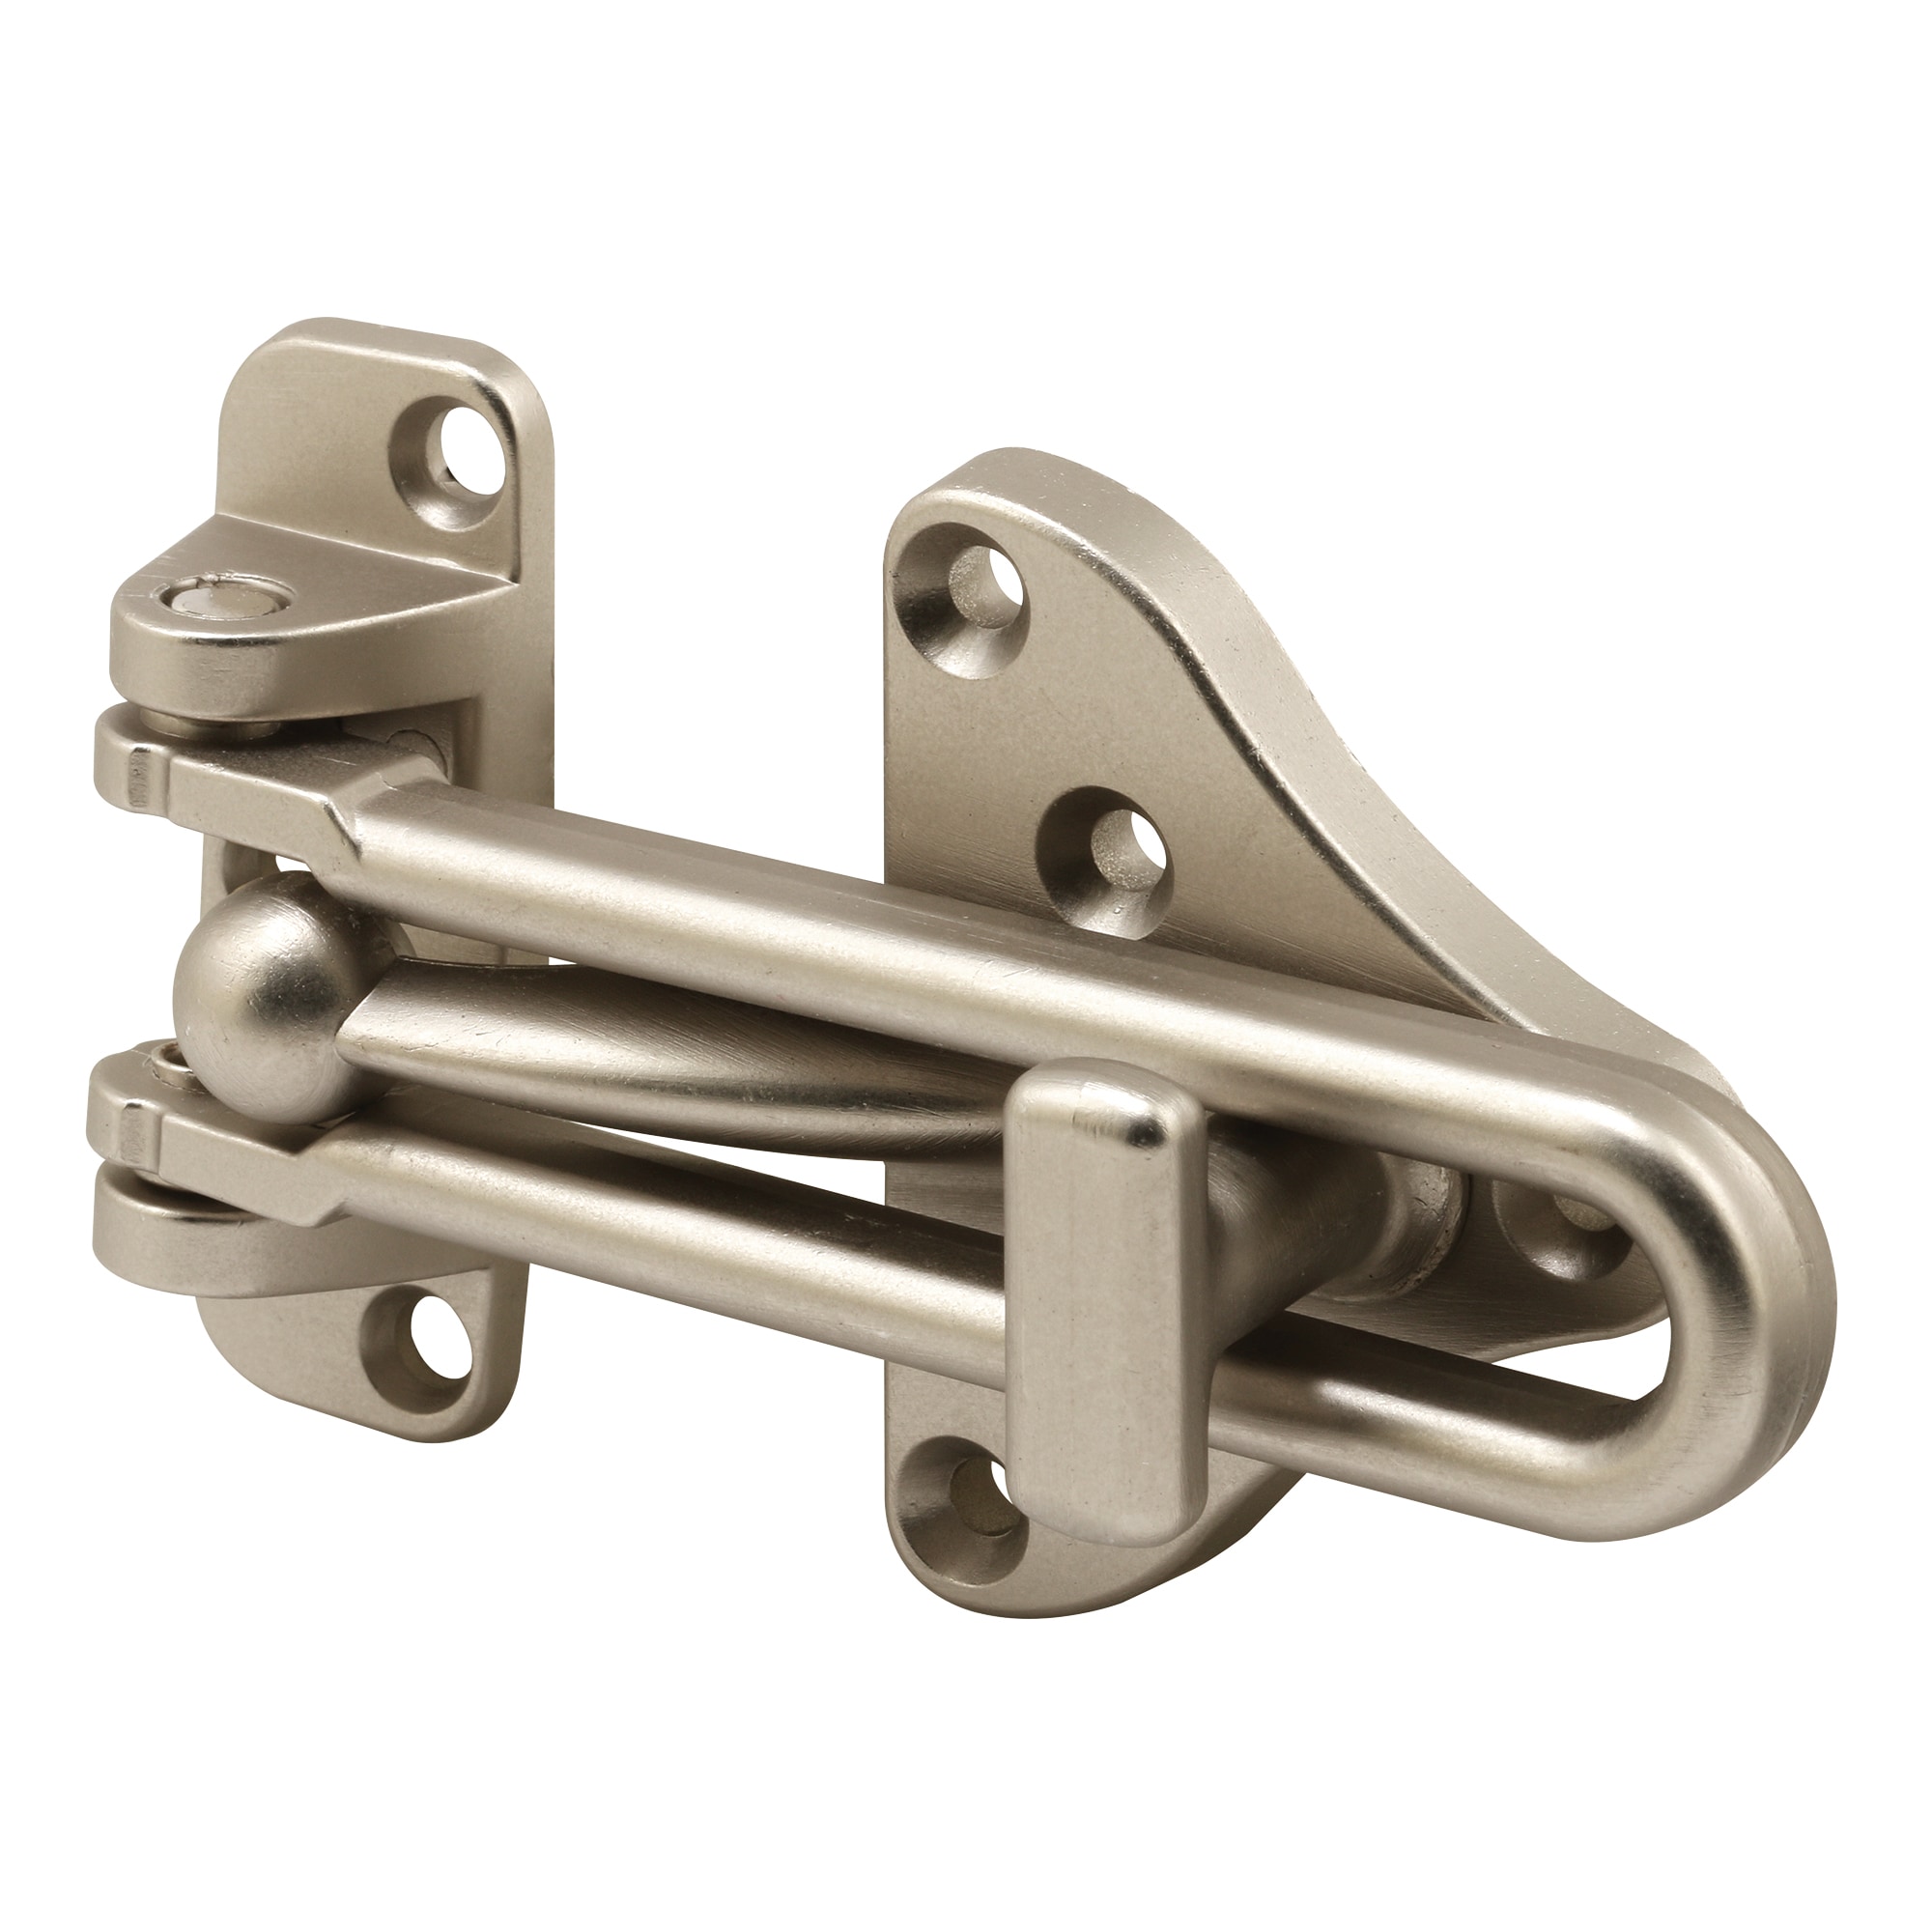 Door Security Chain Stainless Steel Chain Lock for Front Door